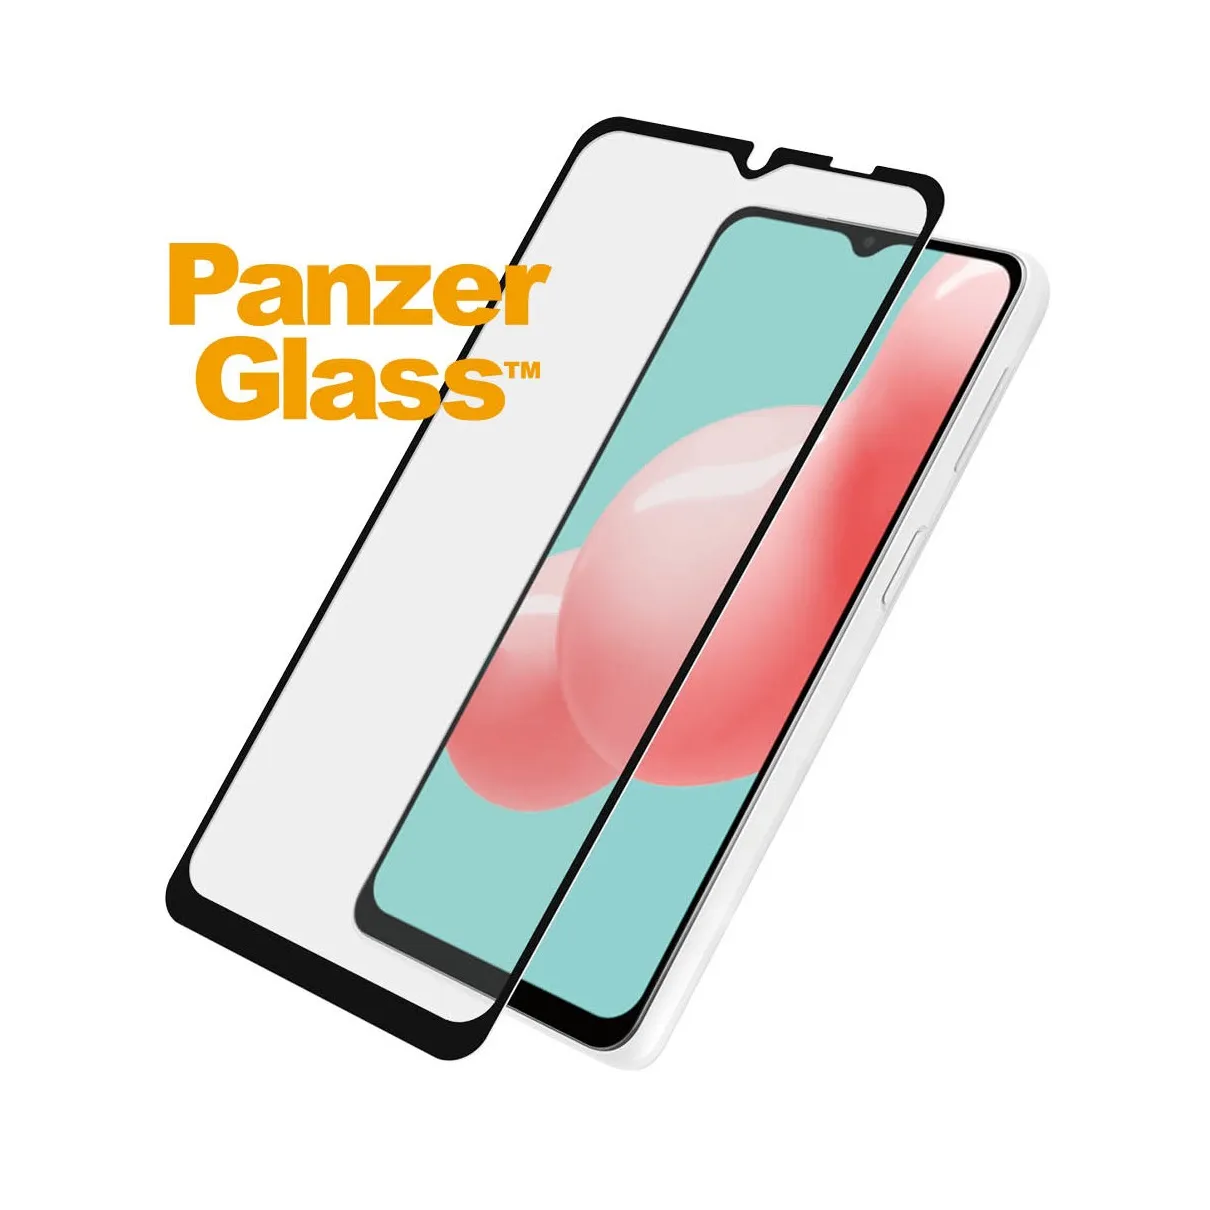 PanzerGlass Samsung Galaxy A32 5G Case Friendly Zwart